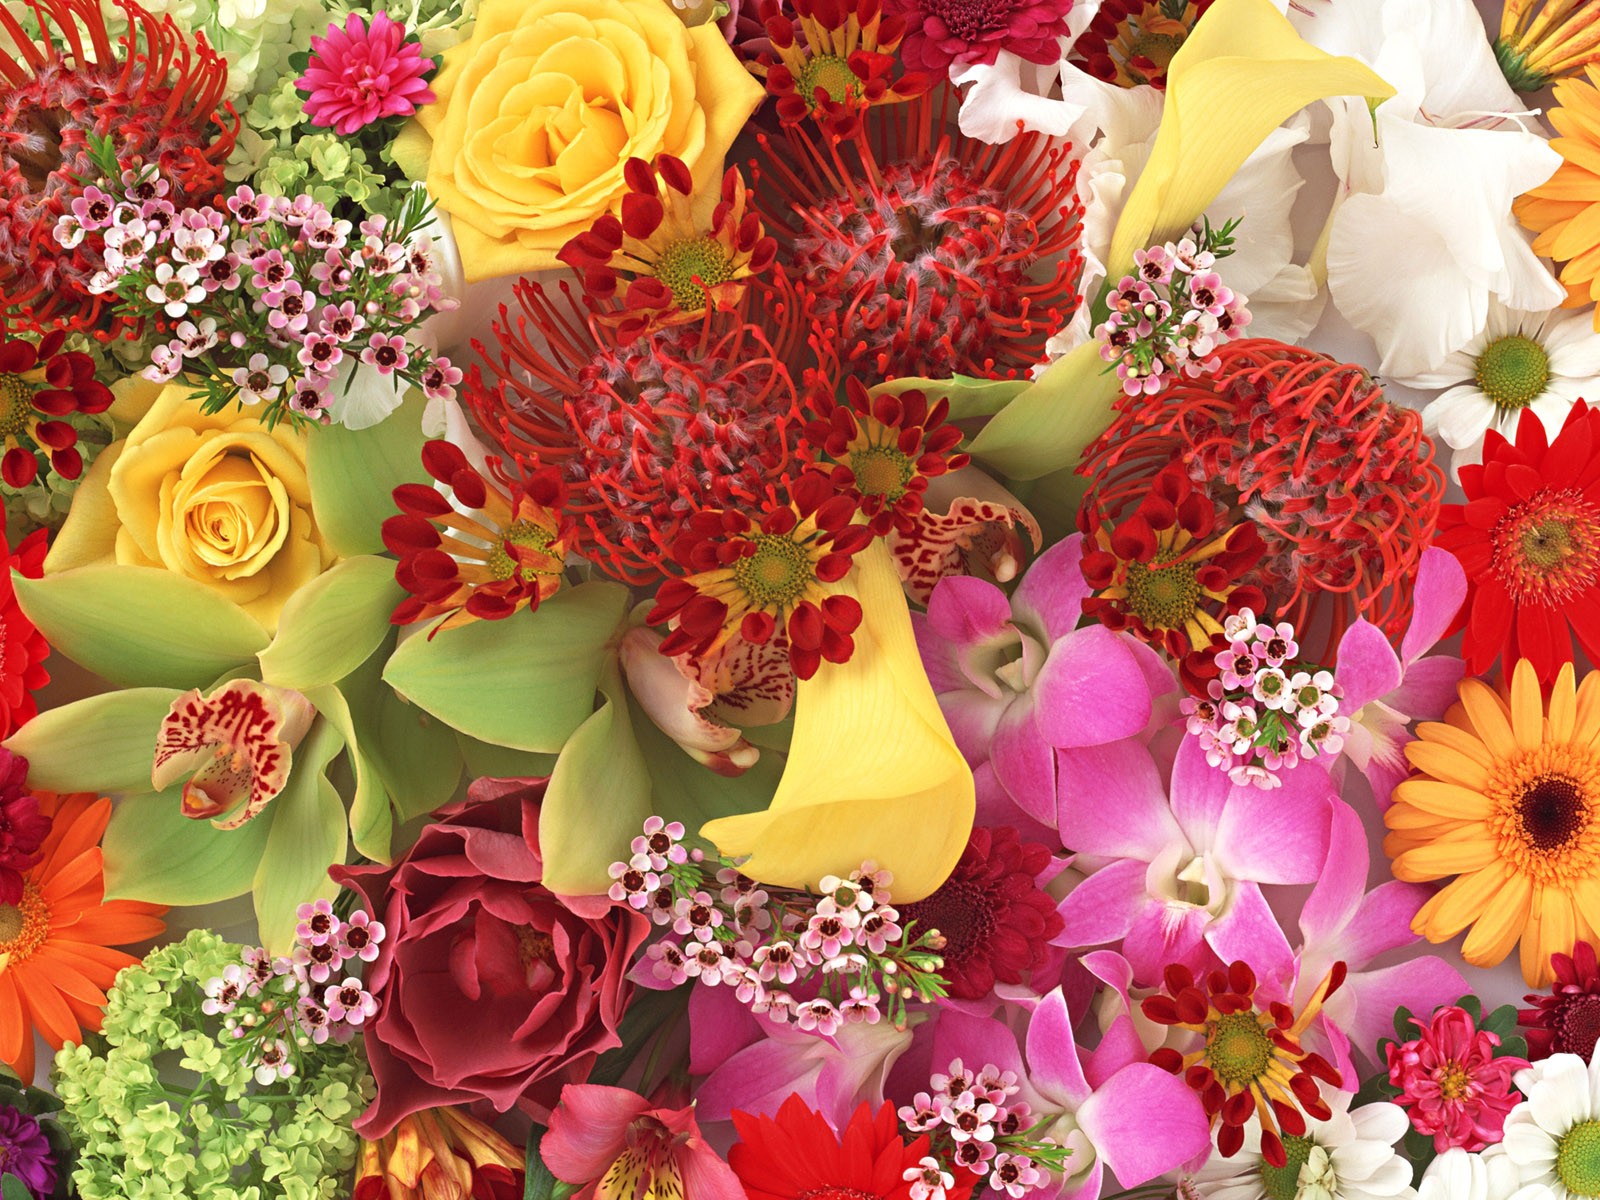 Flower Bouquet|Colorful Bouquet| Rose Bouquet